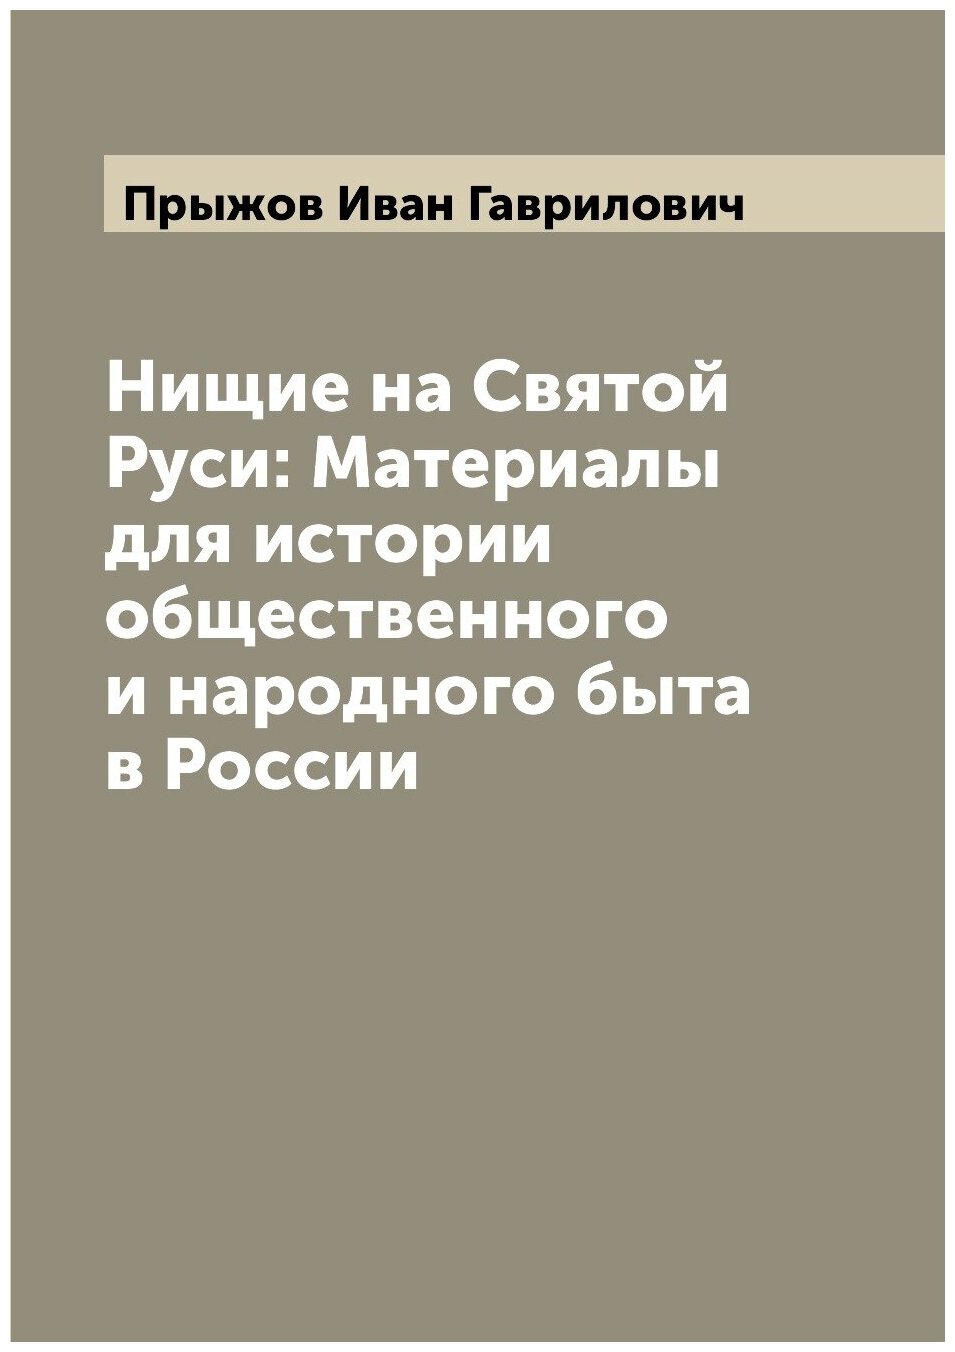 Нищие на Святой Руси: Материалы для истории общественного и народного быта в России